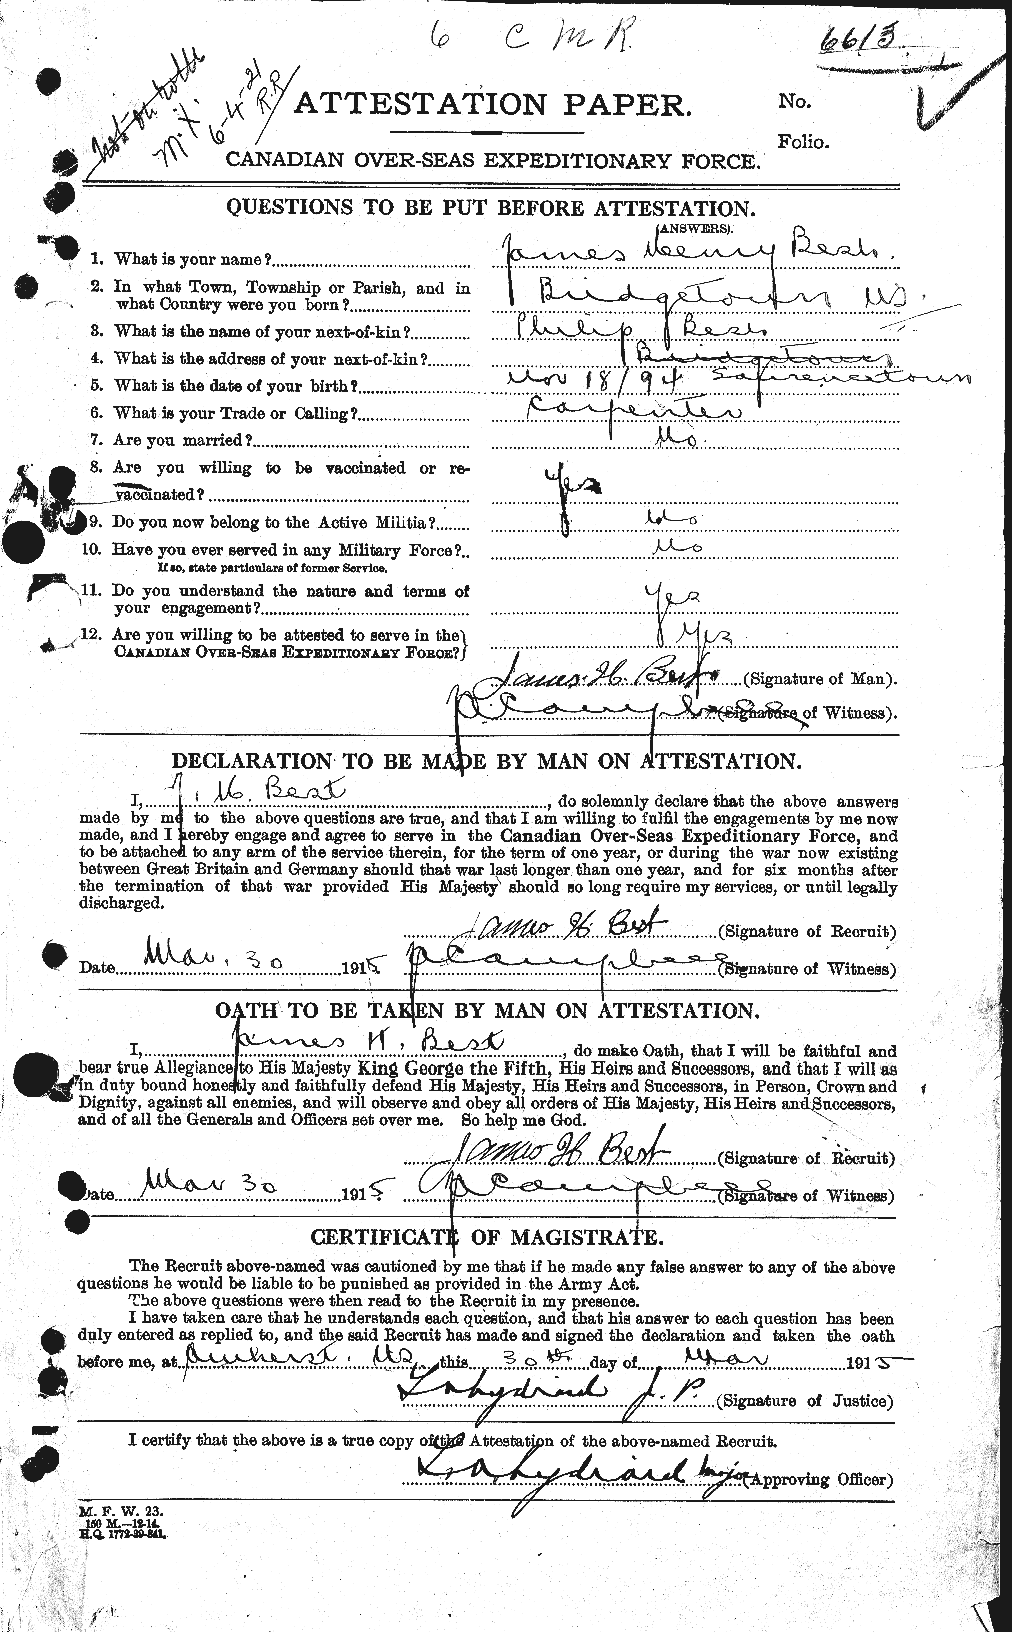 Dossiers du Personnel de la Première Guerre mondiale - CEC 240282a